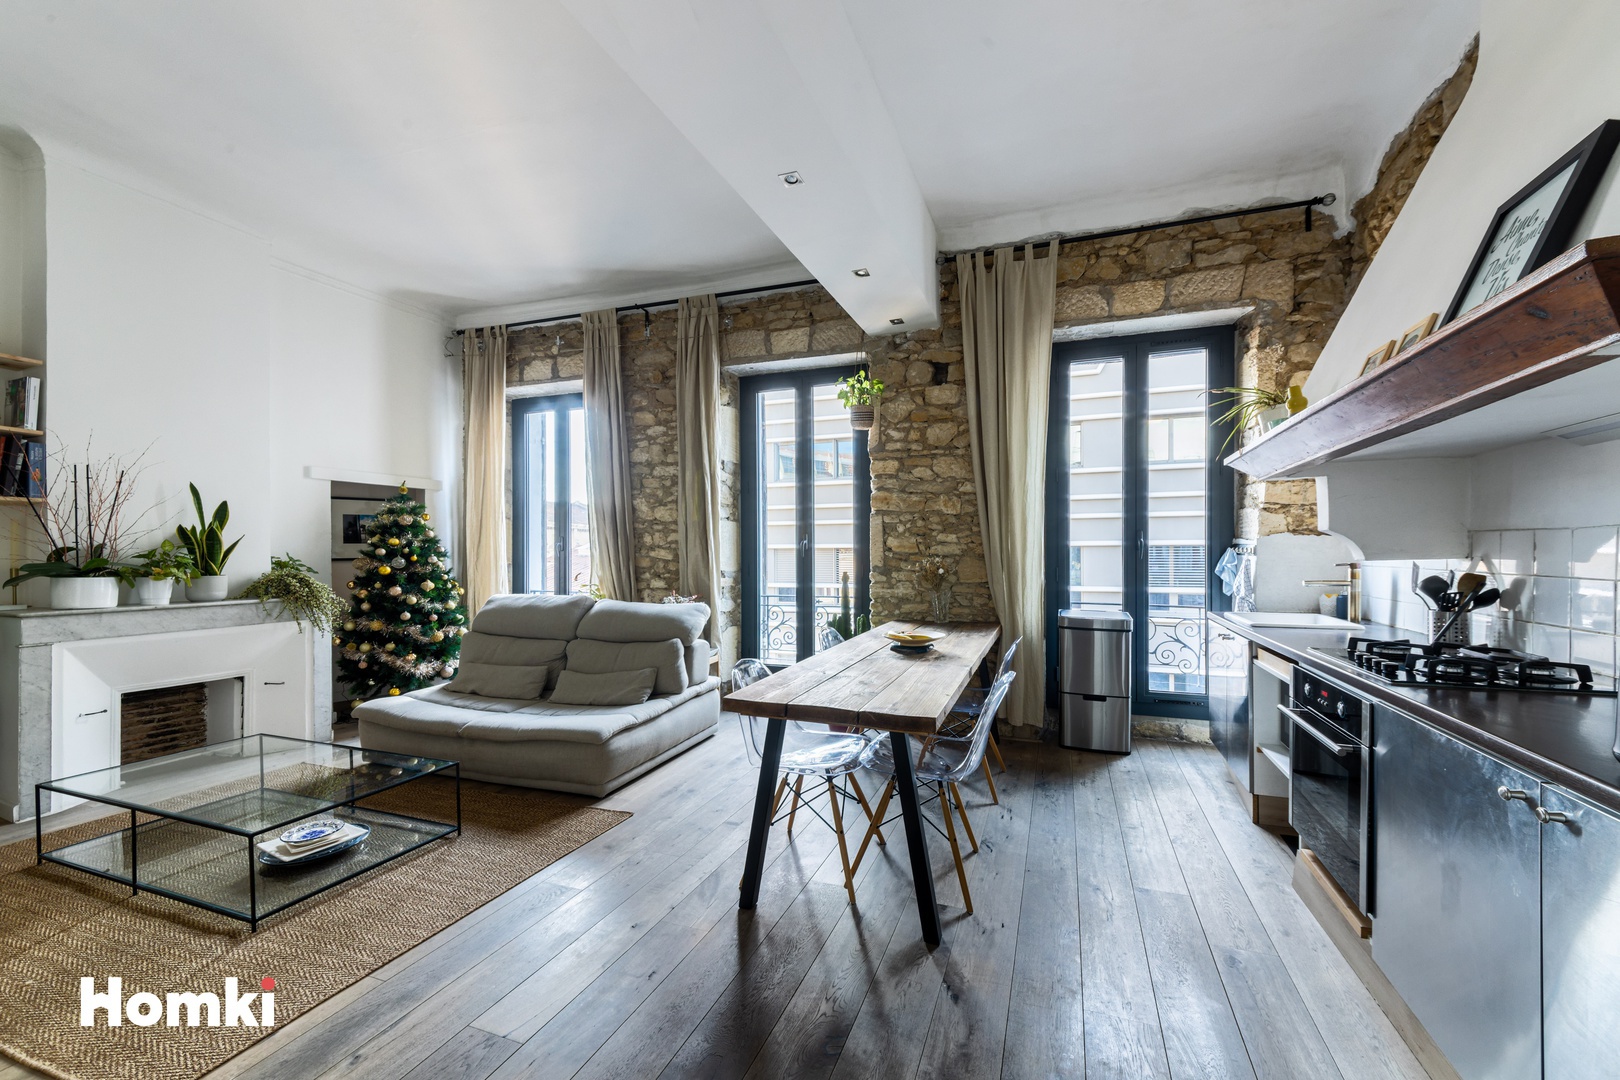 Homki - Vente Appartement  de 53.0 m² à Marseille 13008